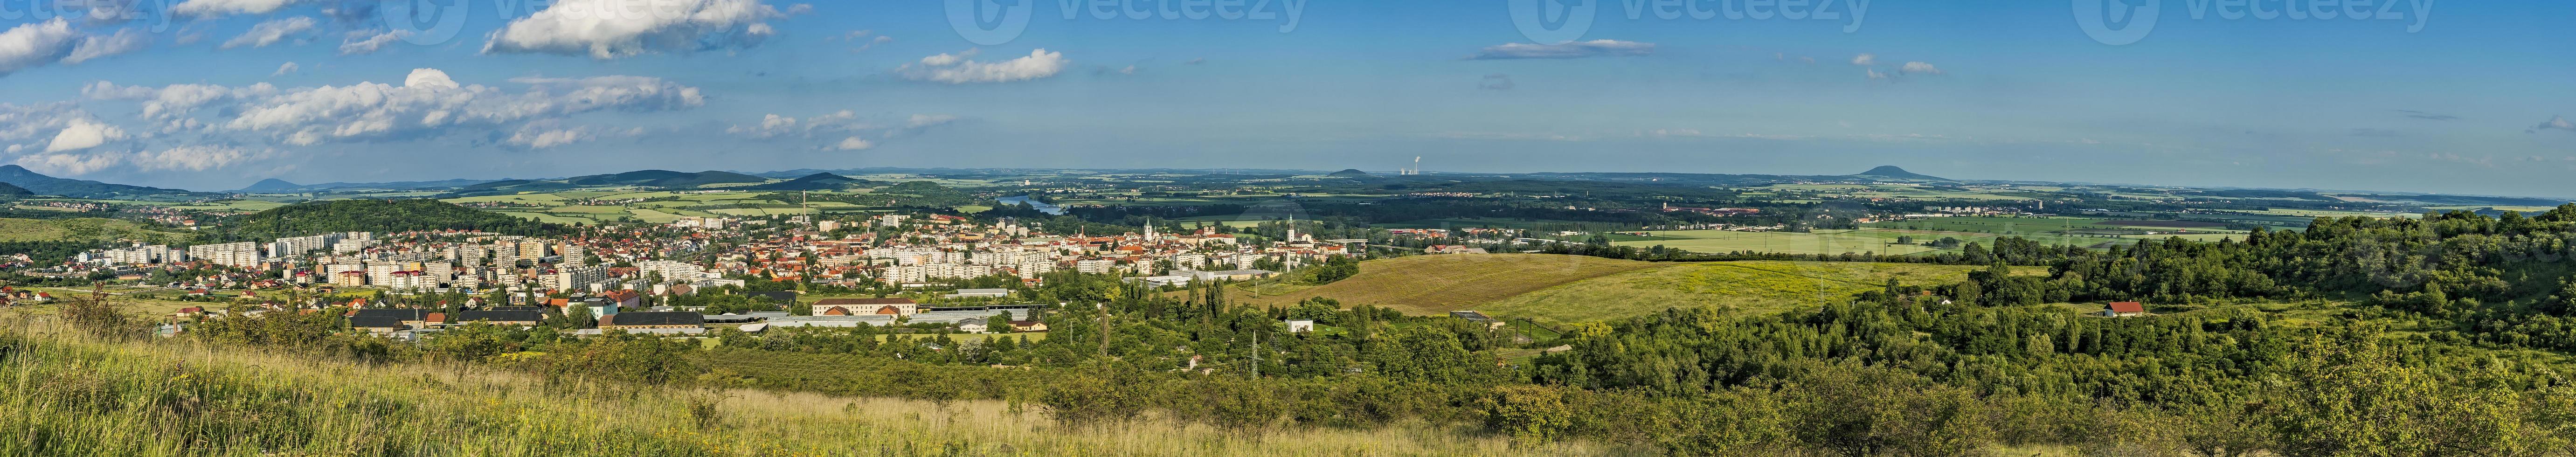 paisagem urbana litomerice república tcheca foto